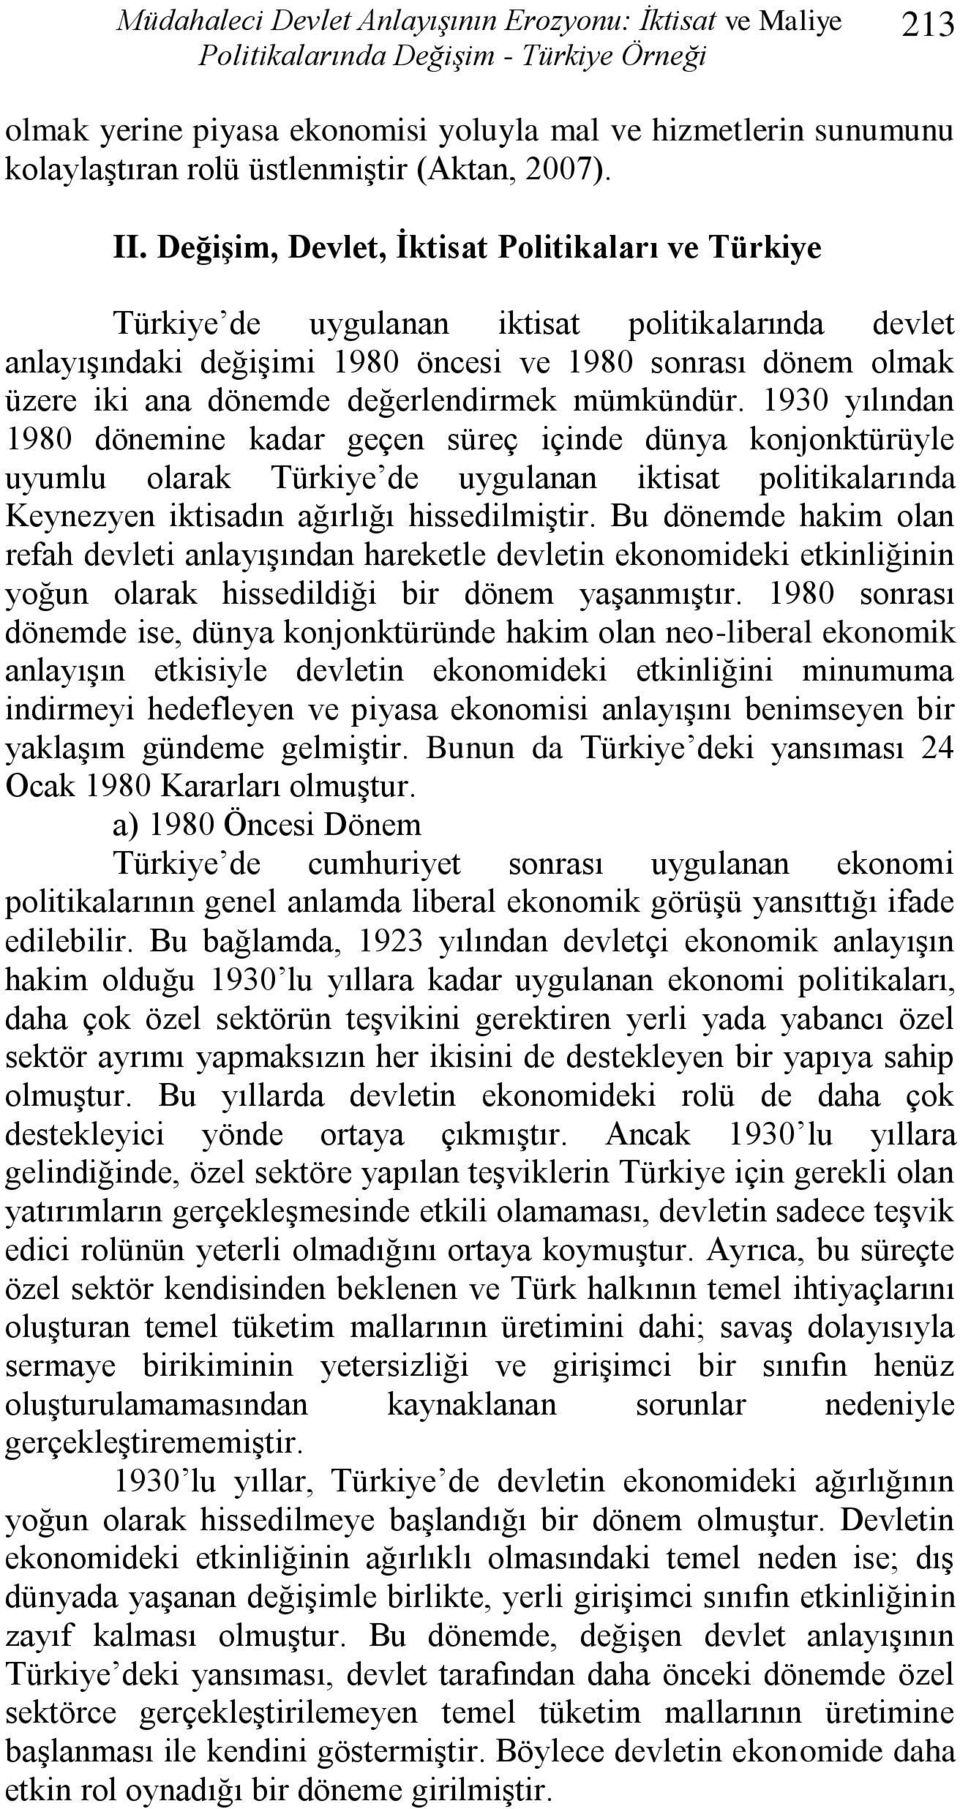 DeğiĢim, Devlet, Ġktisat Politikaları ve Türkiye Türkiye de uygulanan iktisat politikalarında devlet anlayıģındaki değiģimi 1980 öncesi ve 1980 sonrası dönem olmak üzere iki ana dönemde